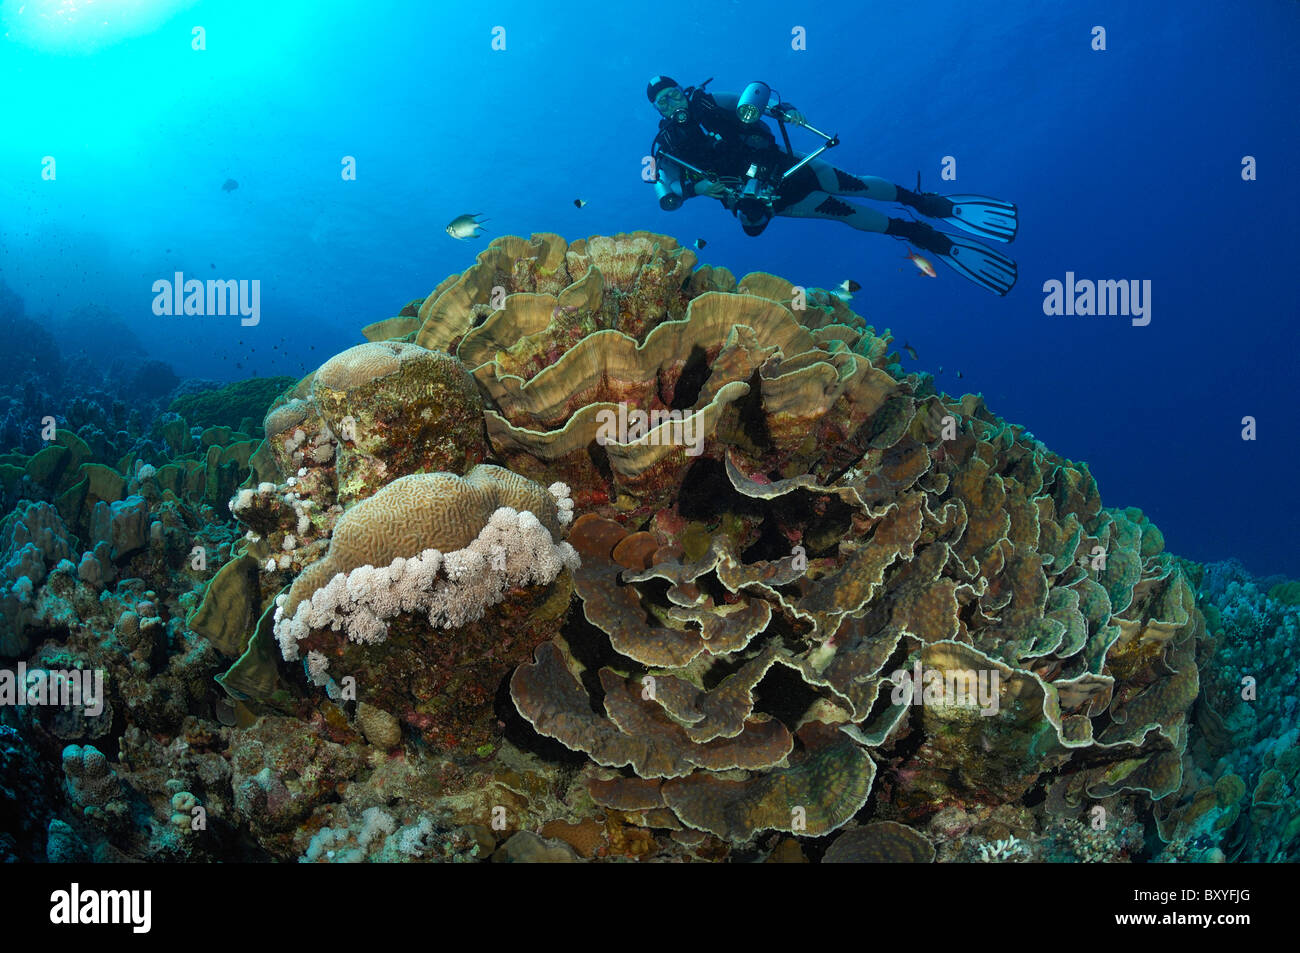 Scuba Diver over Cabbage Coral, Turbinaria sp., Marsa Alam, Red Sea, Egypt Stock Photo